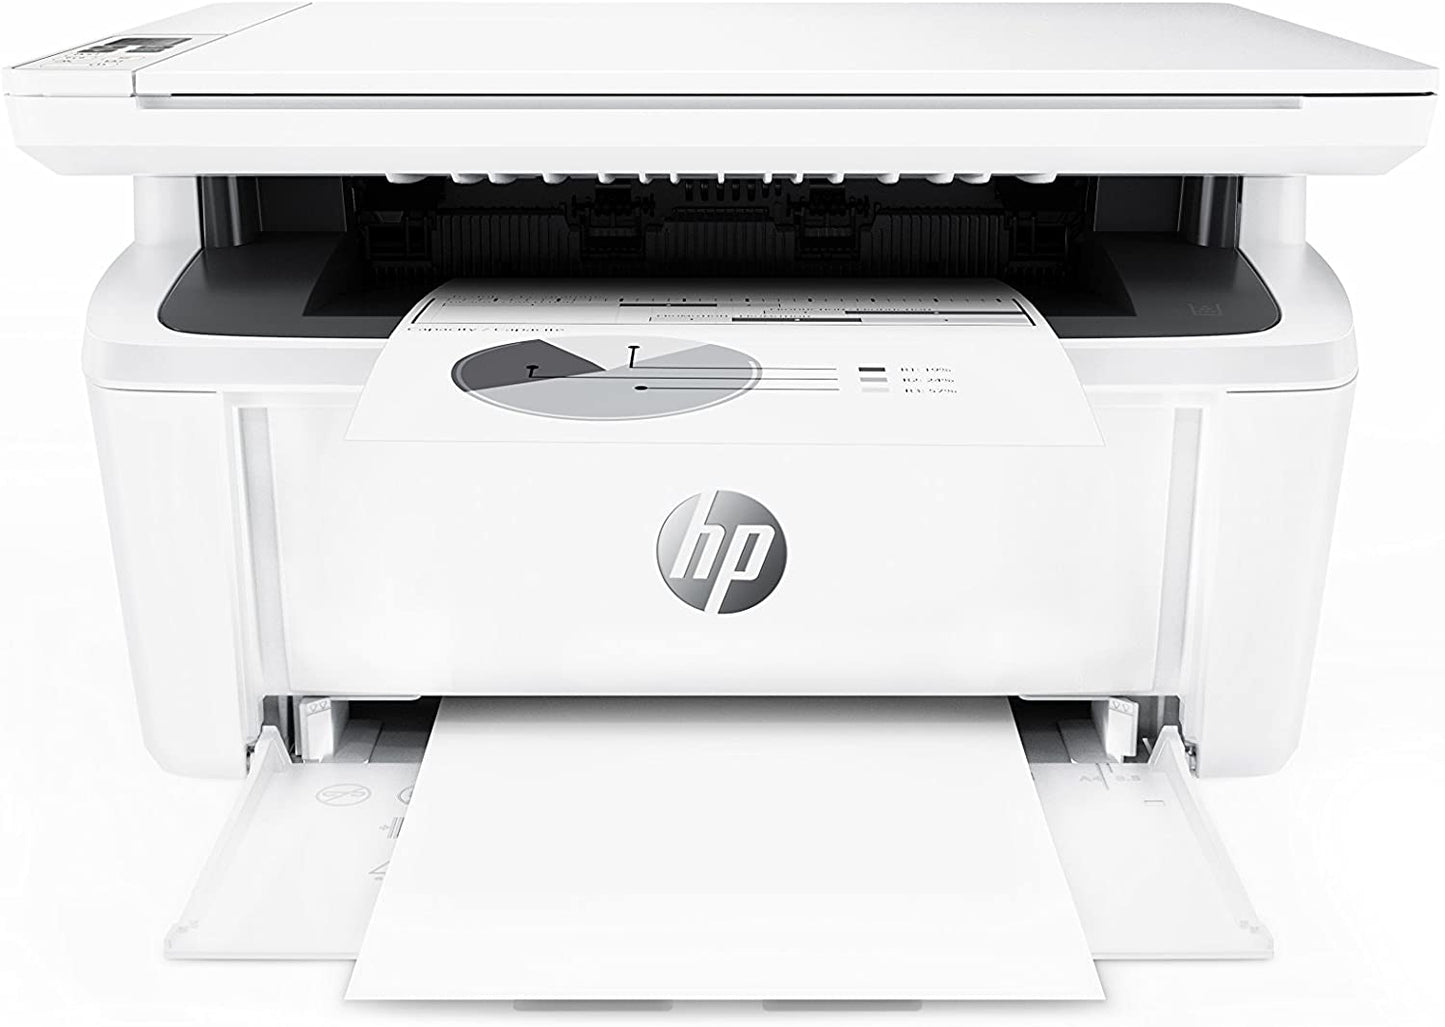 HP LaserJet Pro MFP M28w